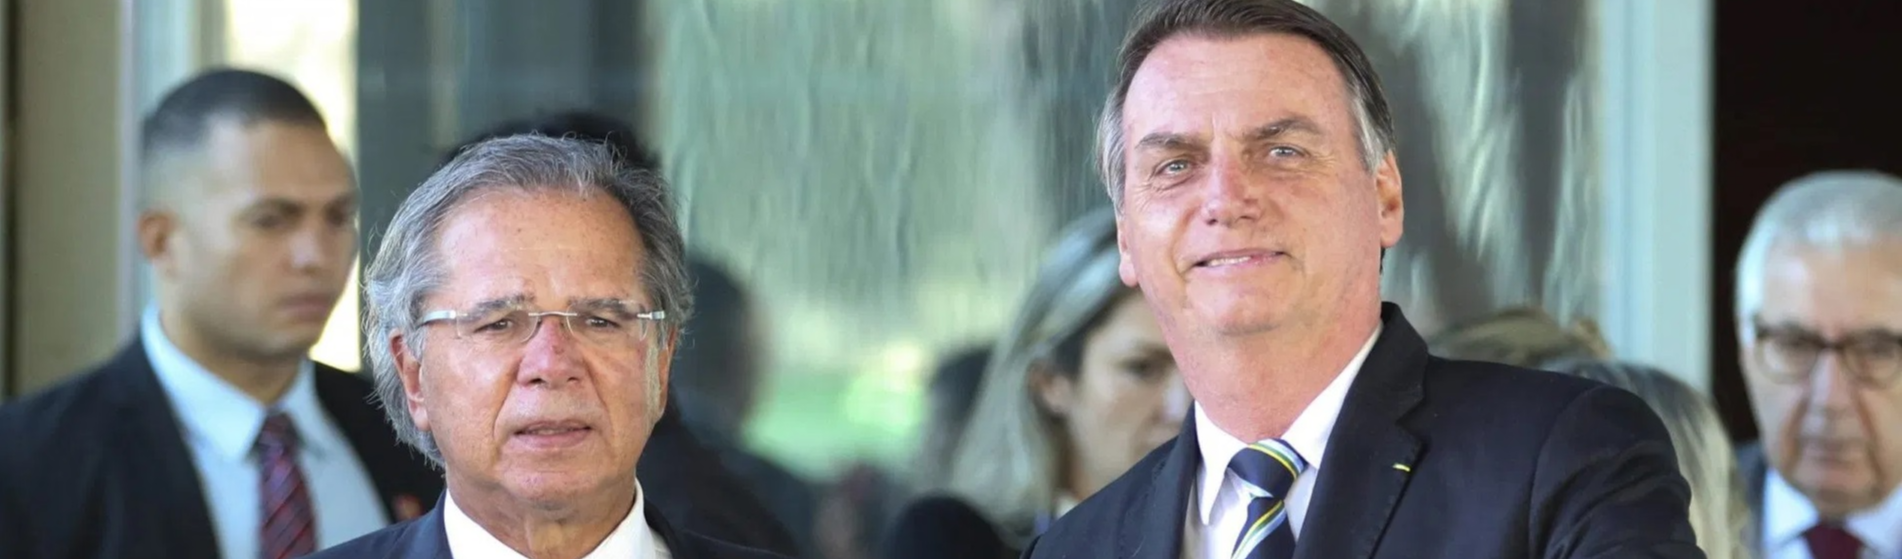 Fracasso econômico: Bolsonaro e Guedes entregam o que prometeram